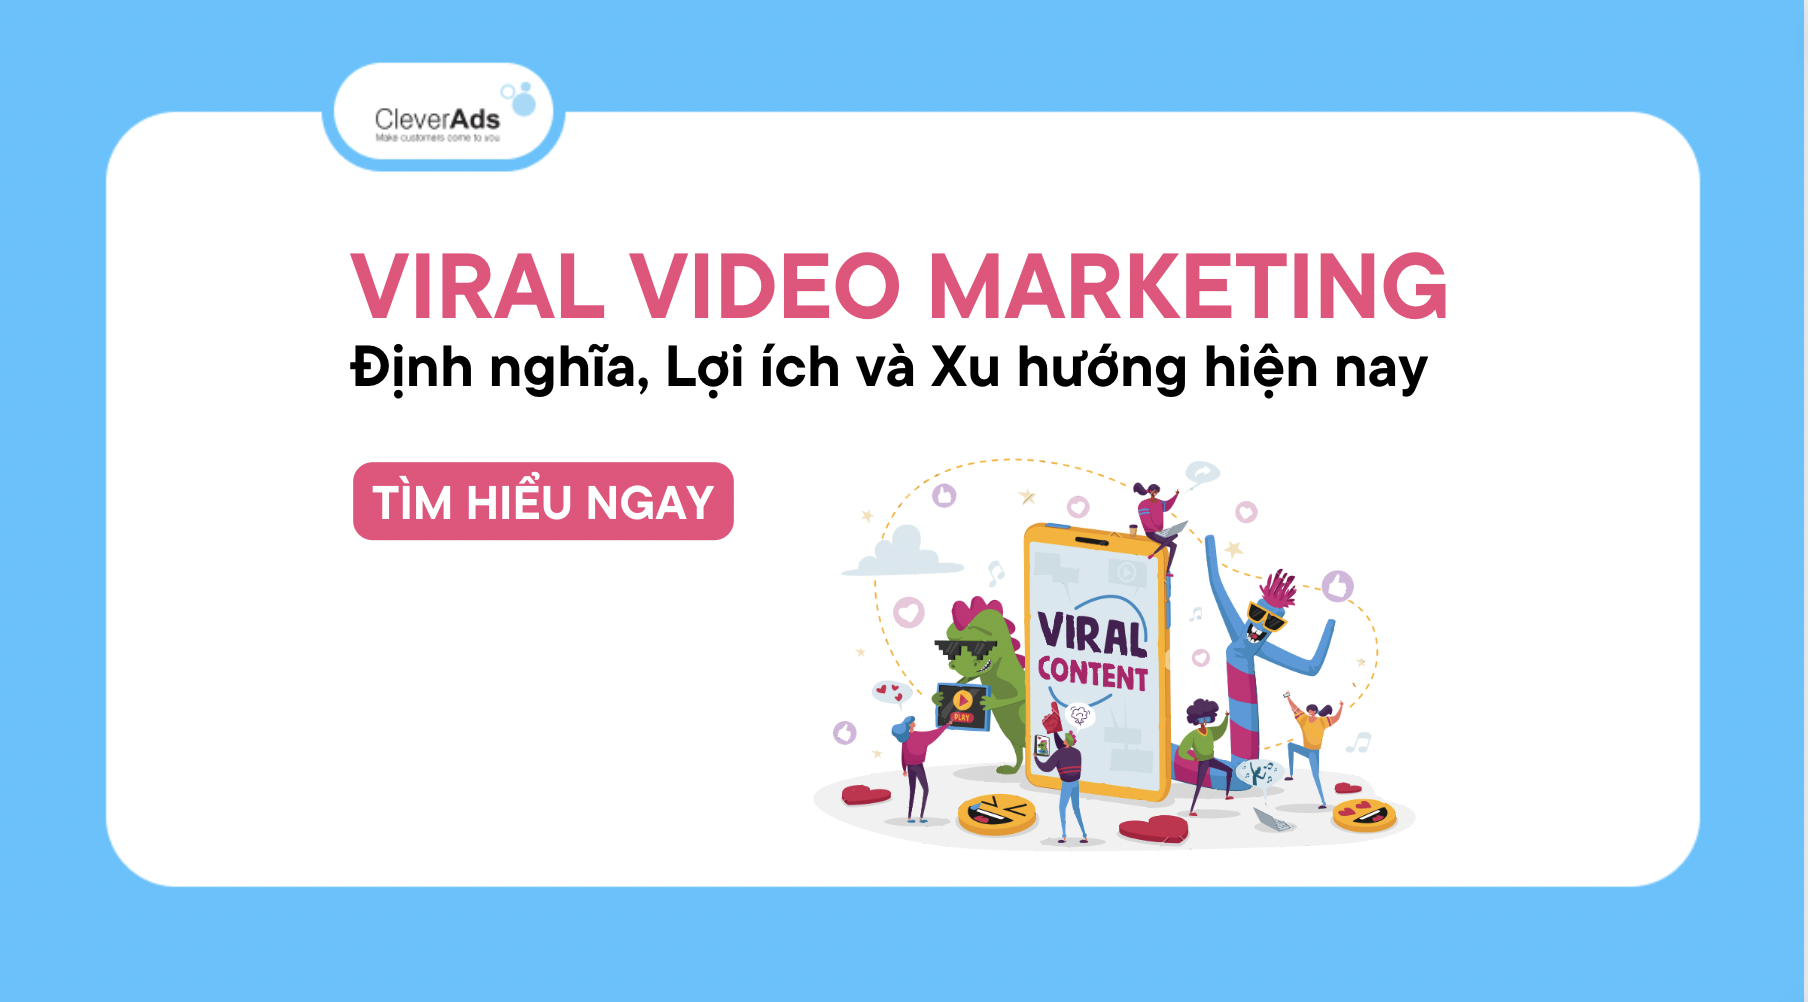 Viral Video Marketing: Định nghĩa, lợi ích và xu hướng hiện nay